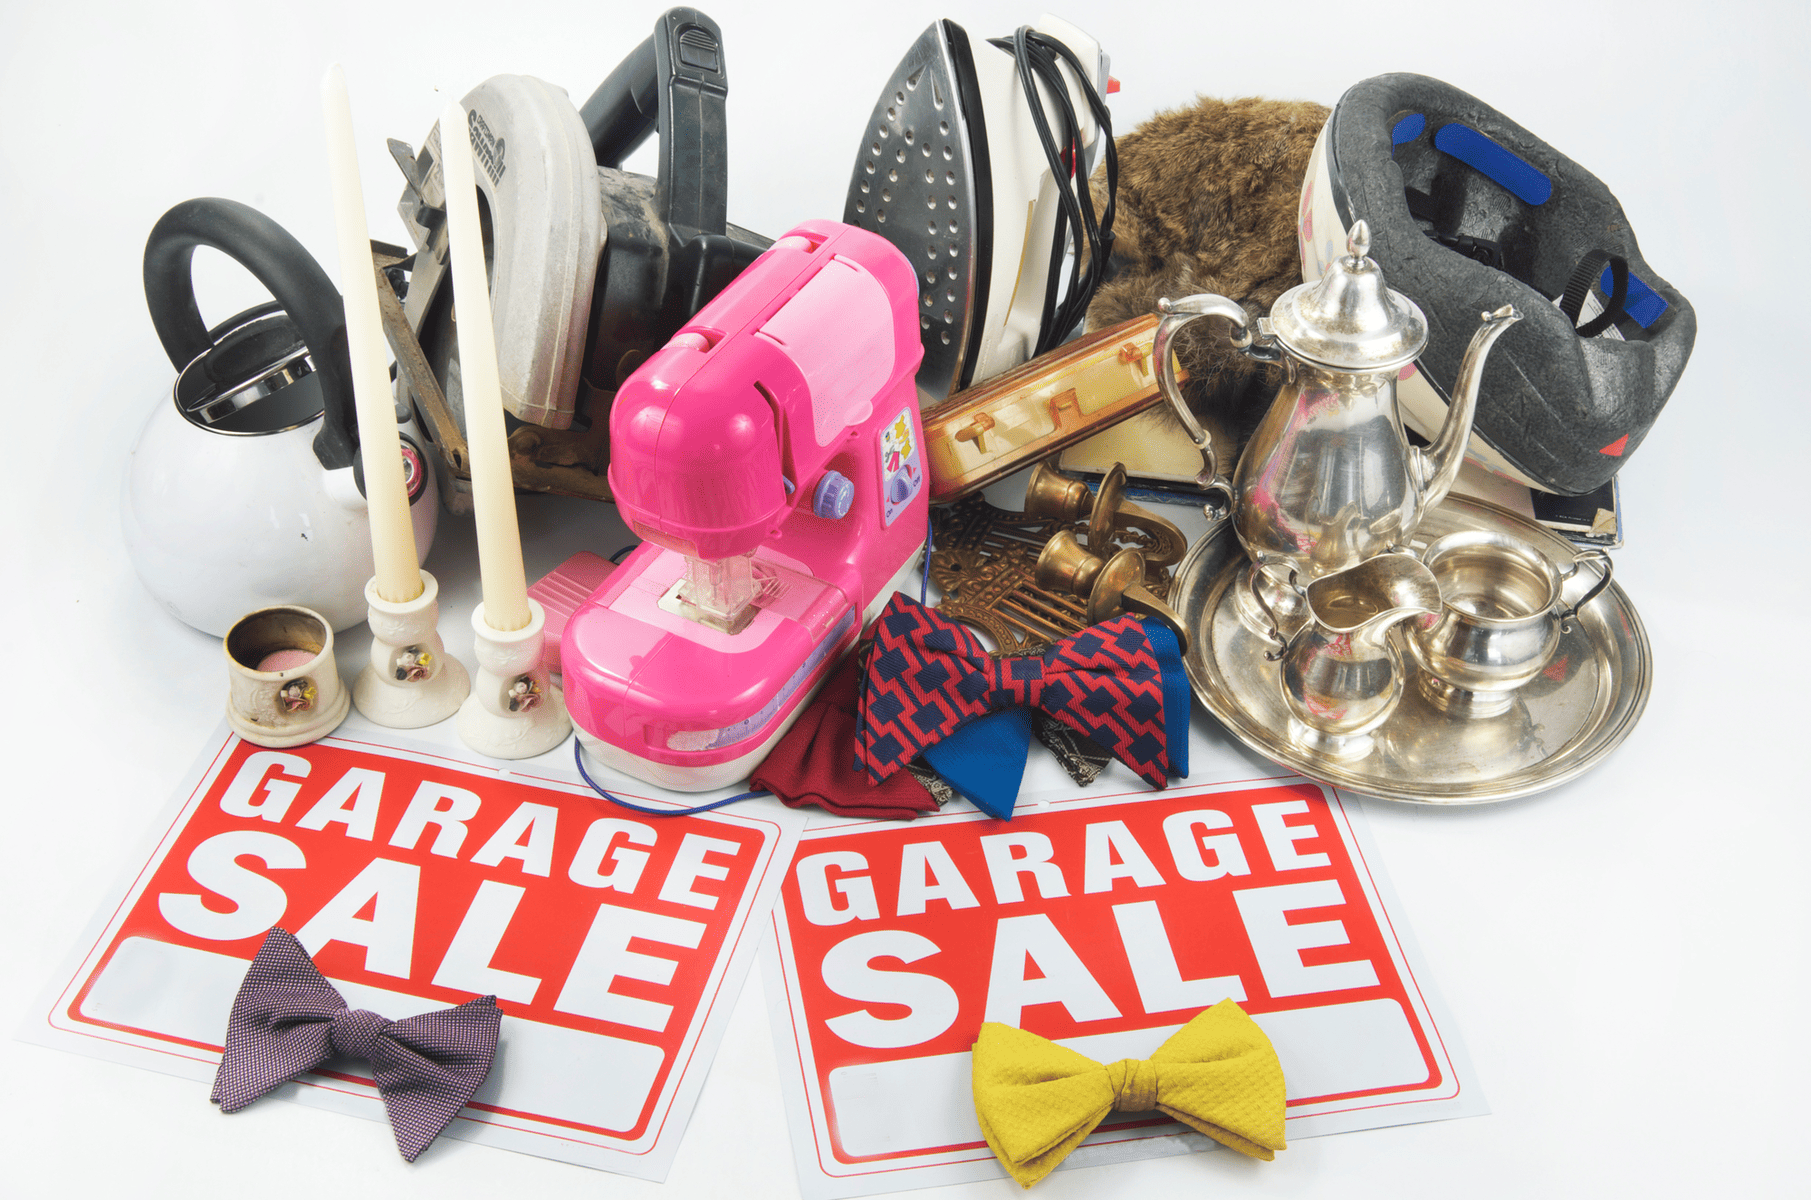 Garage sale items.